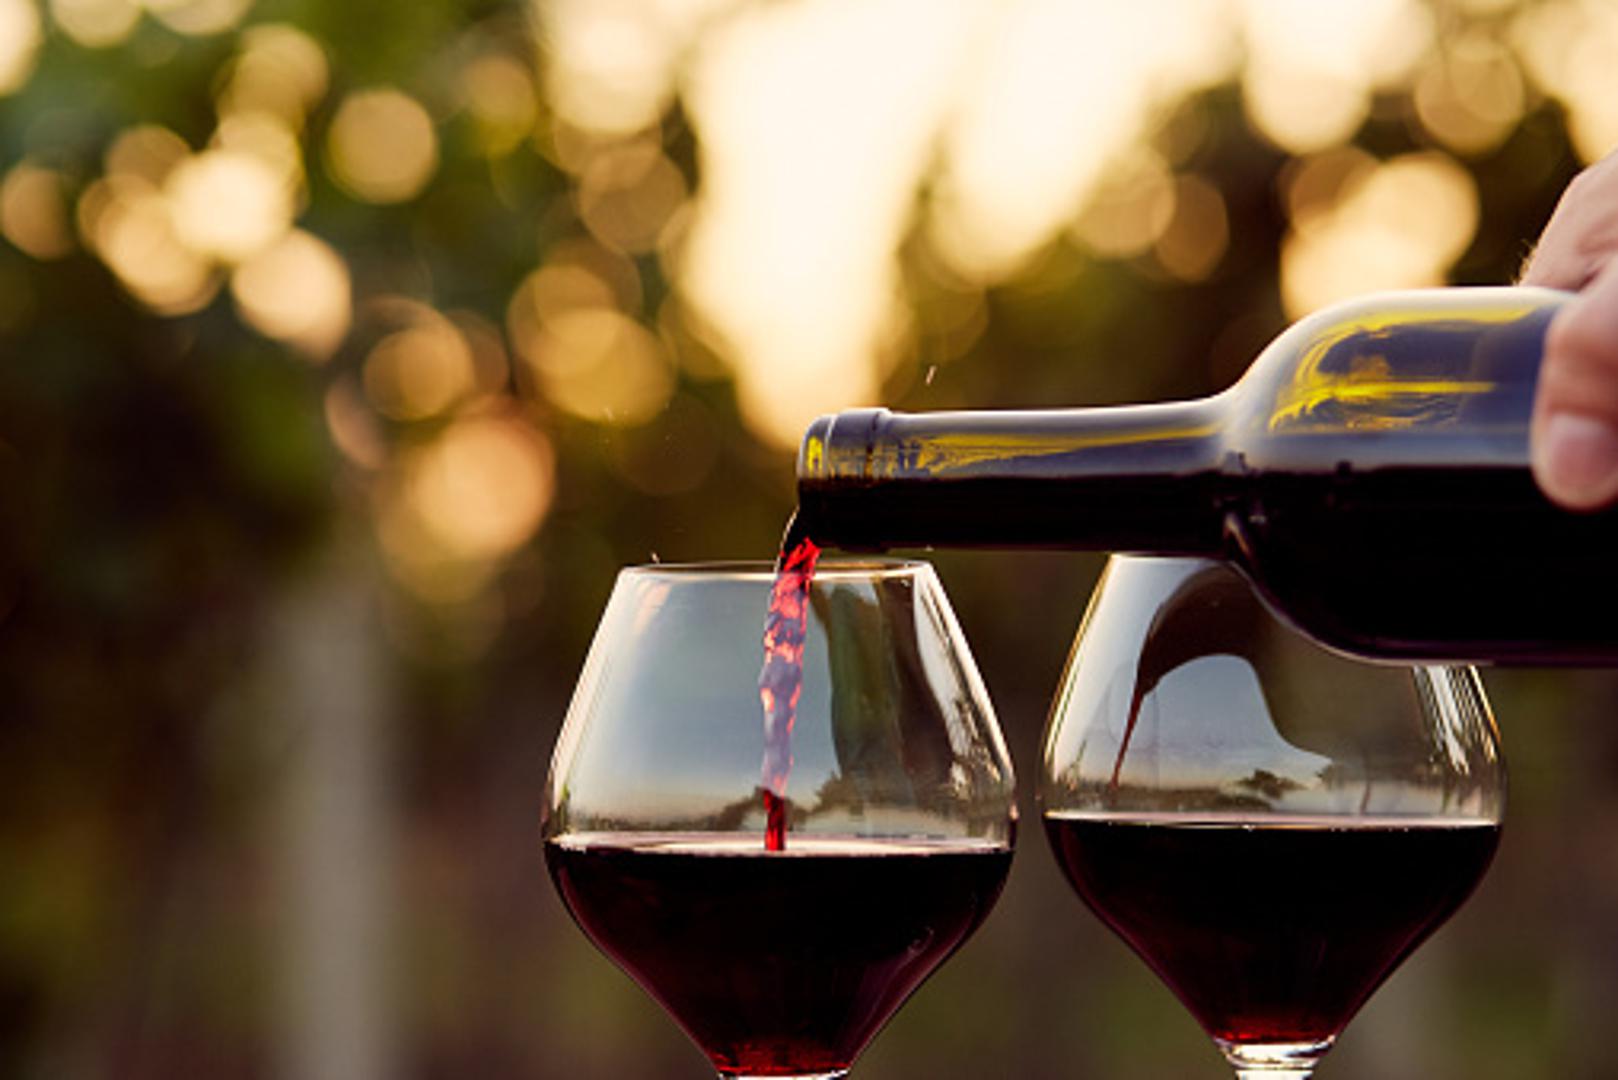 Za ljubitelje crnog vina stižu s ovim istraživanjem dobre vijesti, možete uživati neometano u svom omiljenom crnom vinu i za vrijeme vrućih dana ili noći, jer vrsni poznavatelji vina savjetuju da ga rashladite i izbaciite iz glave misao da je to "krivo". 